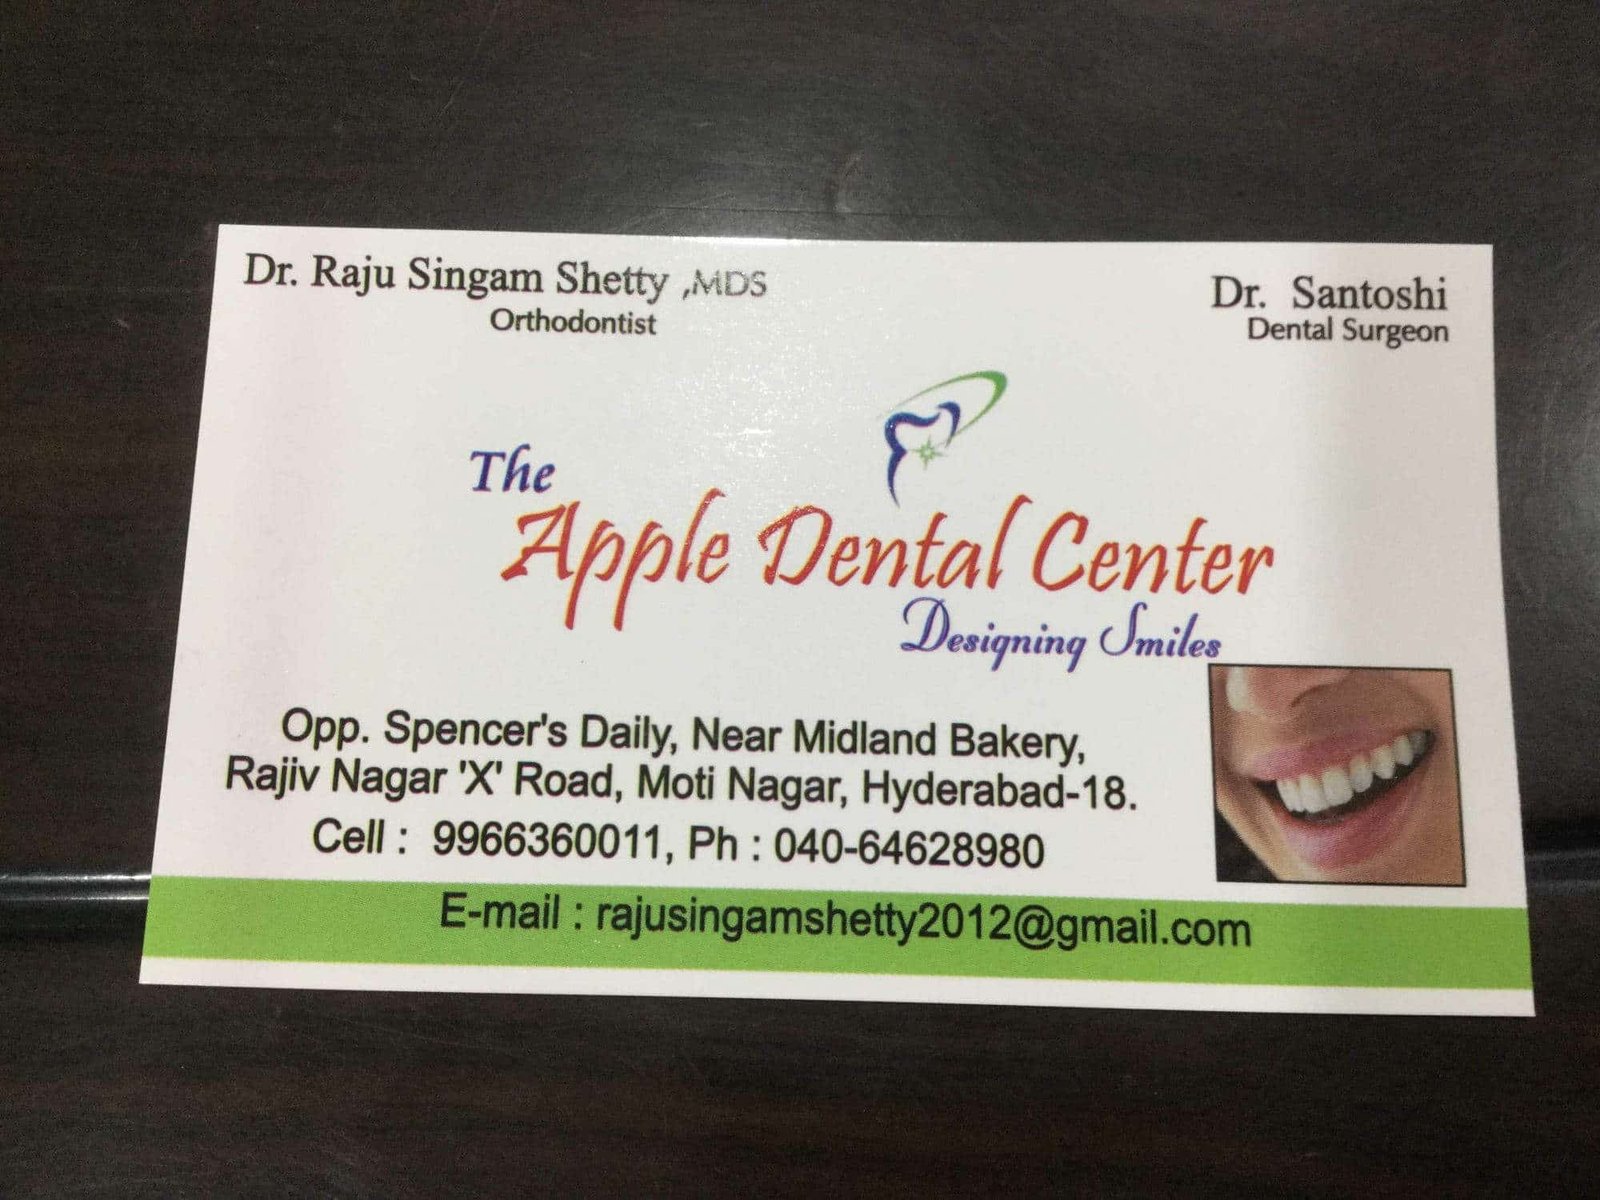 The Apple Dental Center